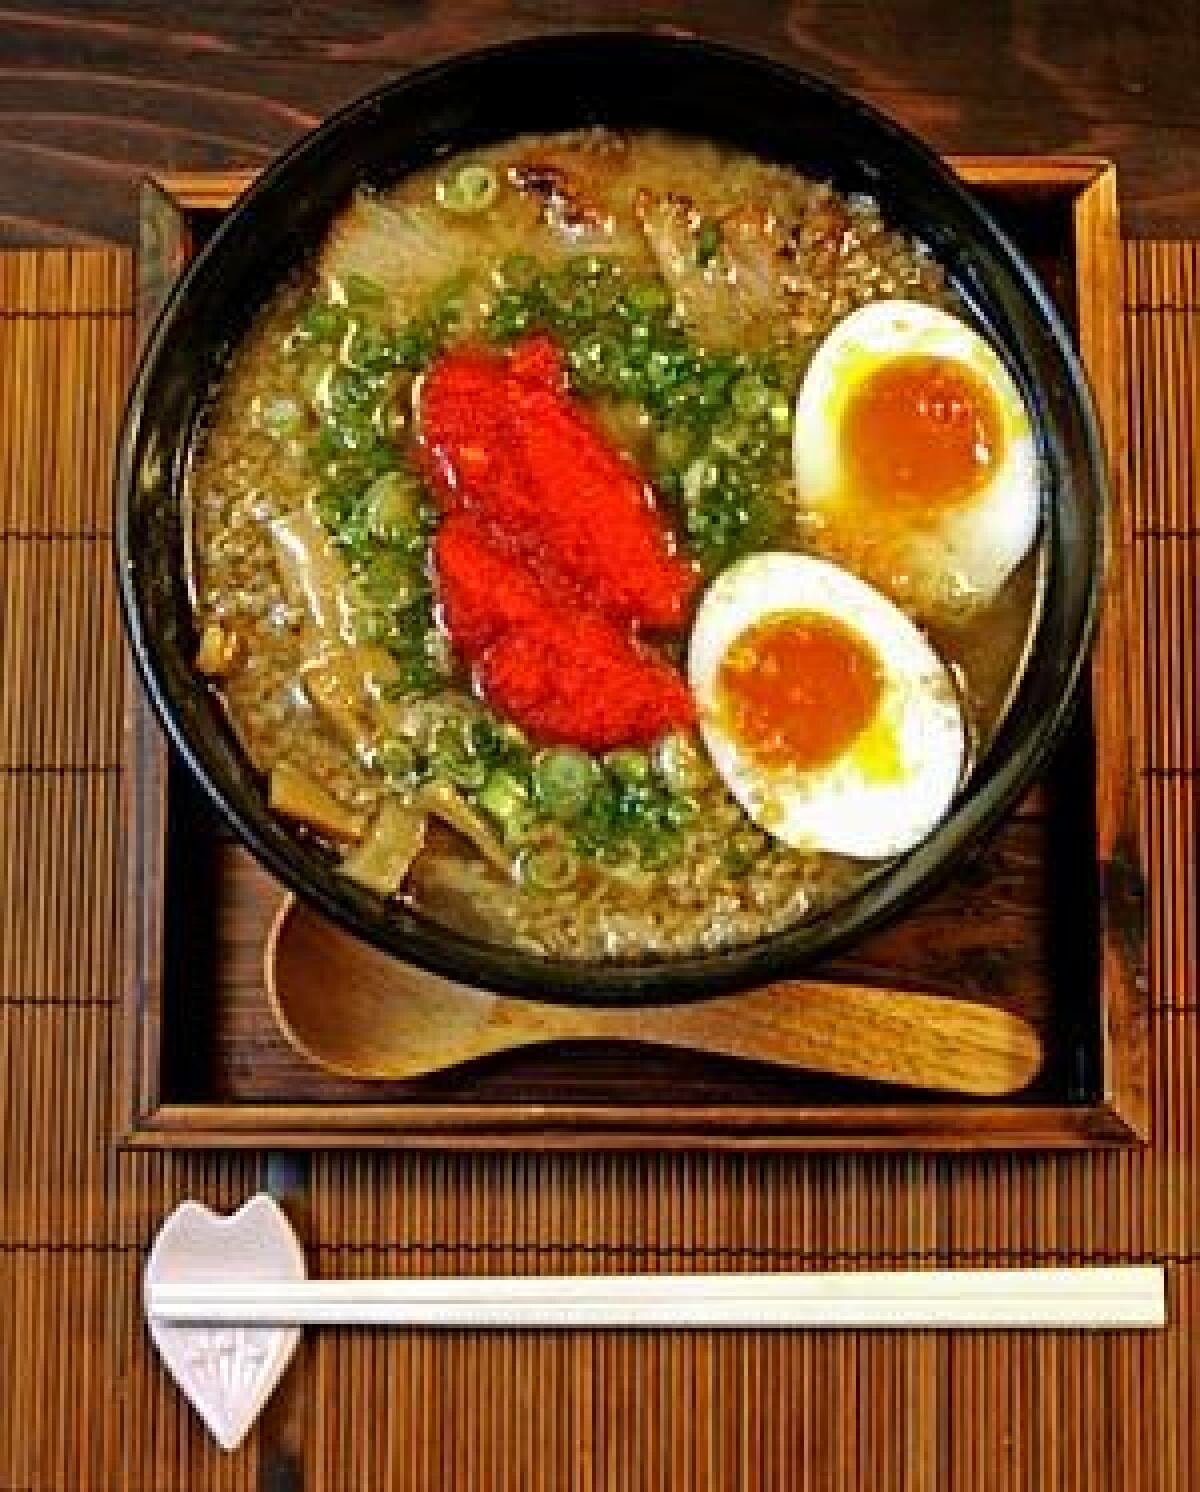 SOUP'S ON: A kotteri shoyu ramen bowl.